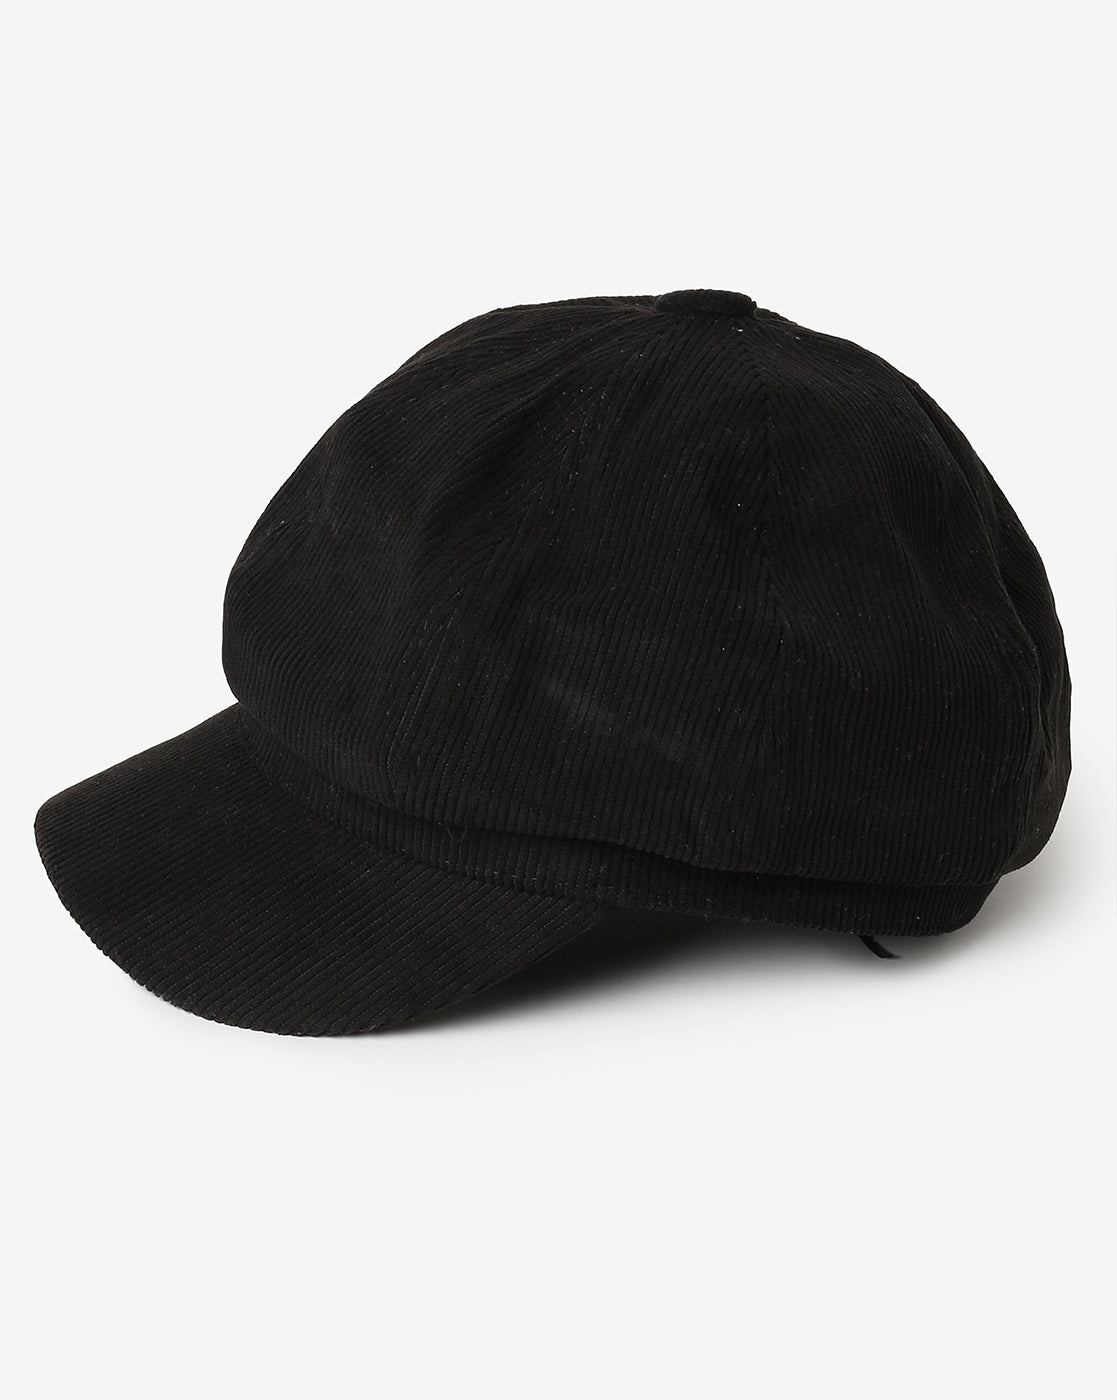 Black Vintage Newsboy Cap